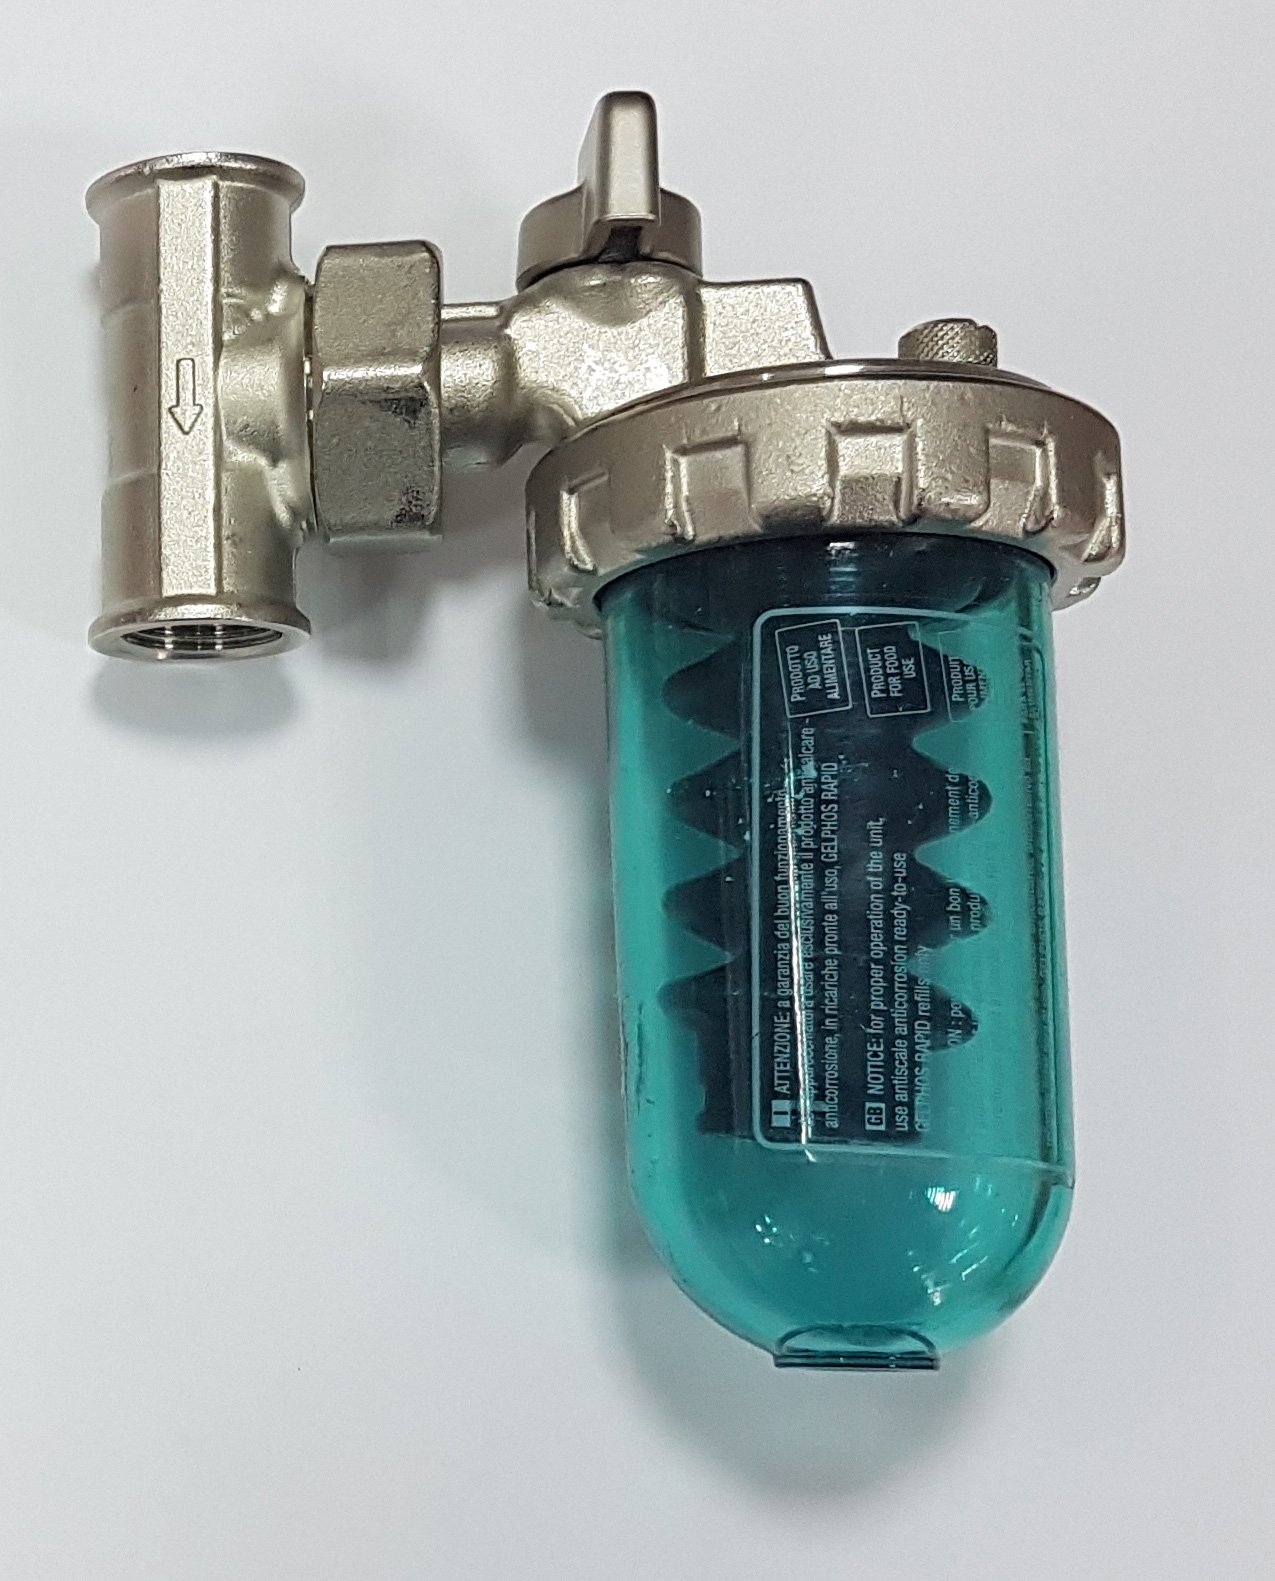 Фильтр воды для водонагревателя. Дозатор Gel Dosaphos 250 1/2". Дозатор Gel Dosaphos 250 1/2-1/2 Gel (умягчитель воды). Умягчитель воды Dosaphos 250 1/2. Дозатор-умягчитель воды Dosaphos 250.